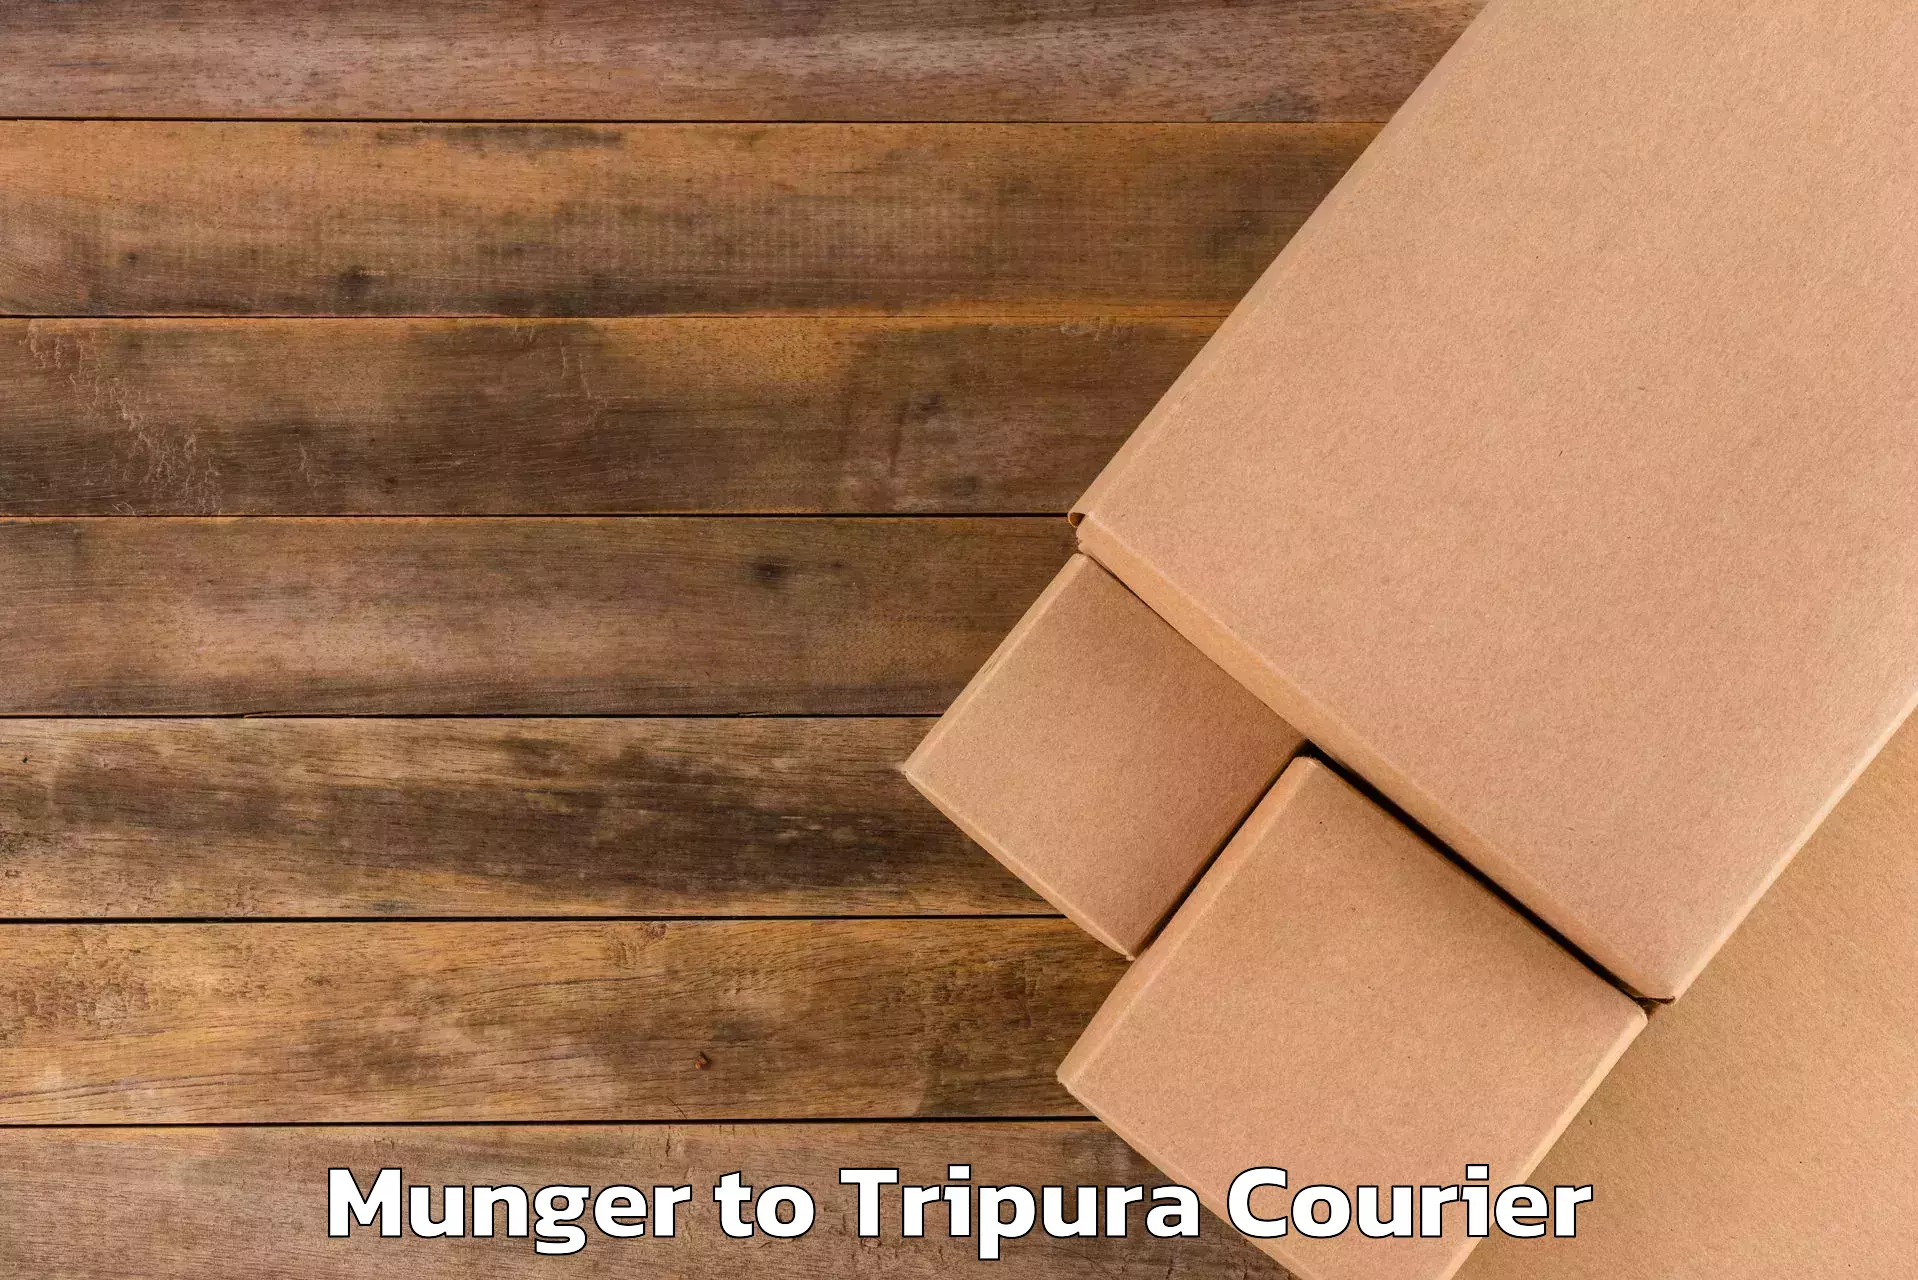 Same day luggage service Munger to Udaipur Tripura